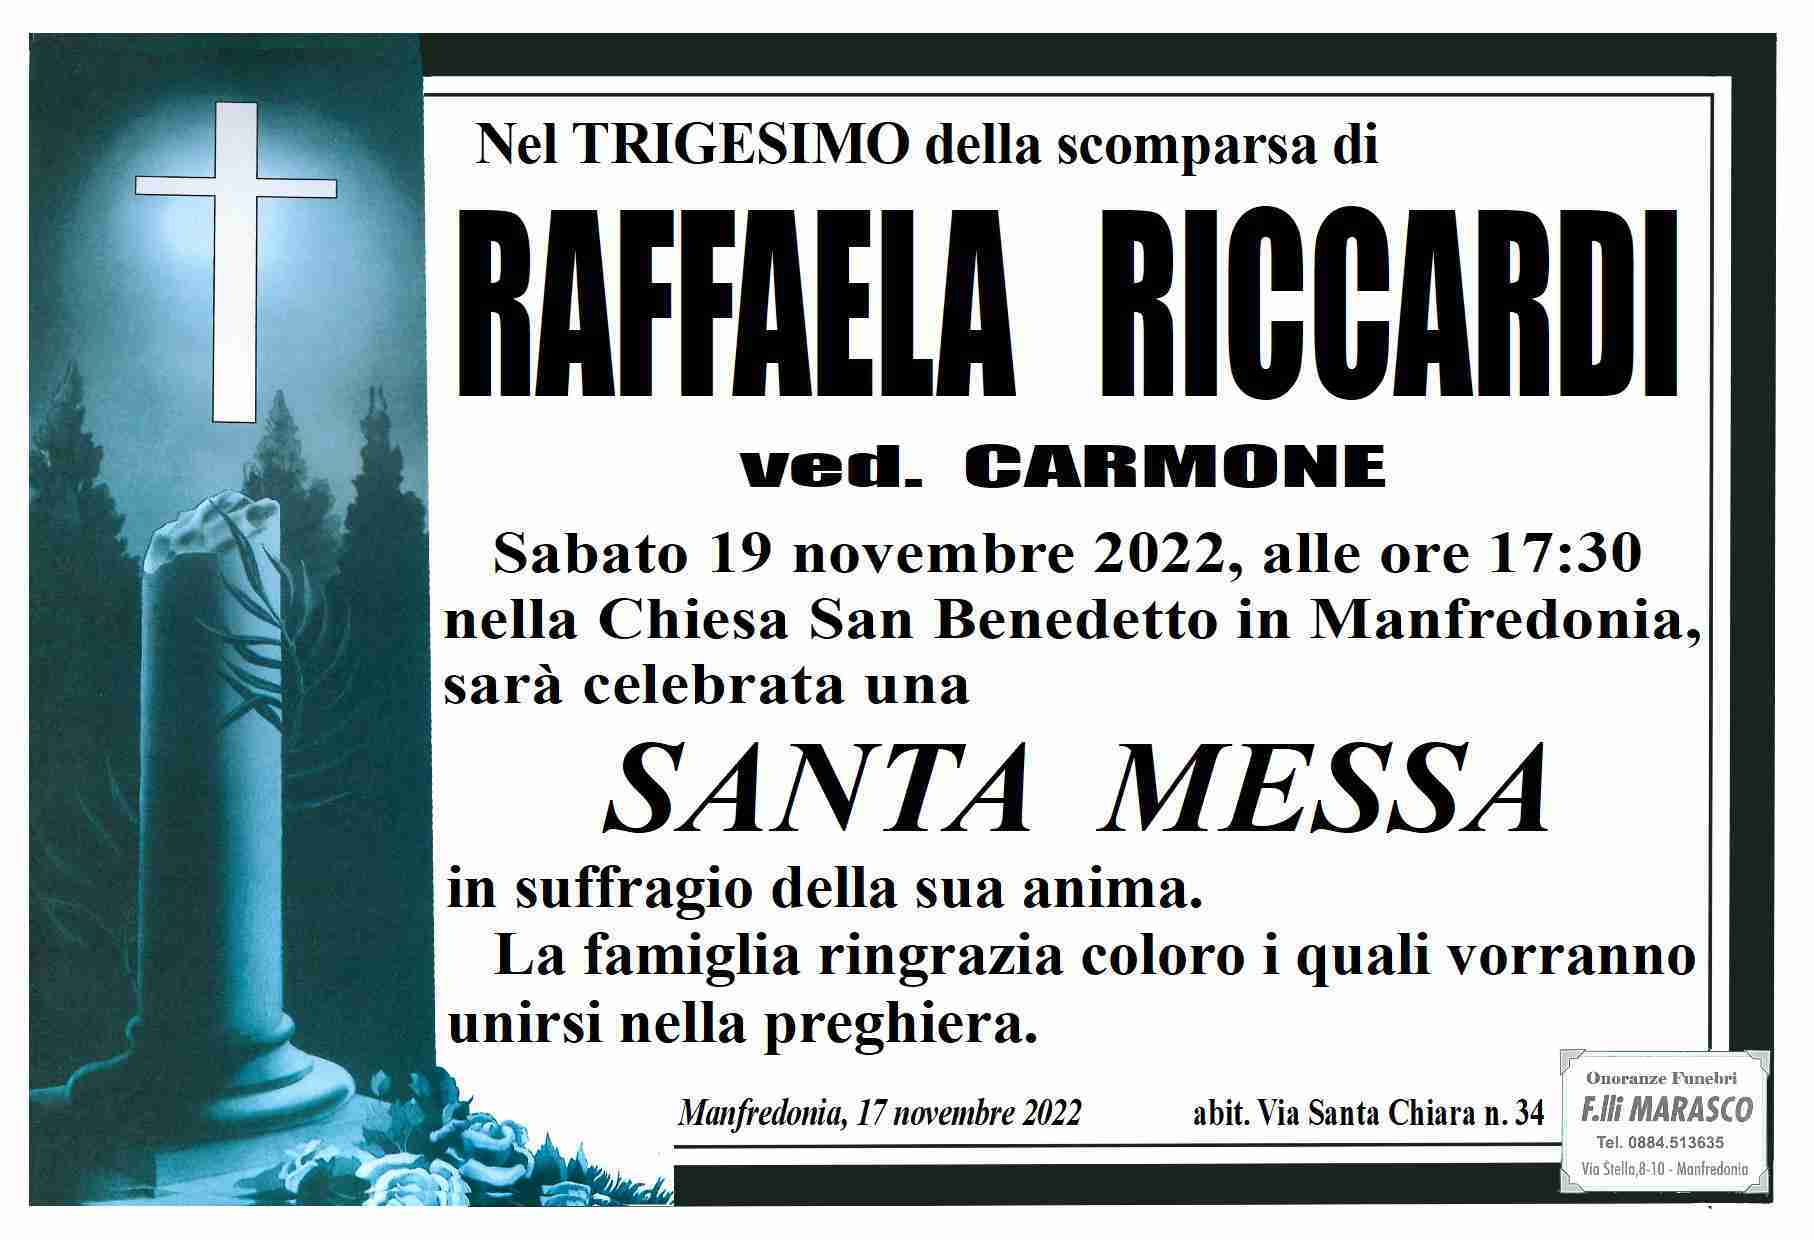 Raffaela Riccardi